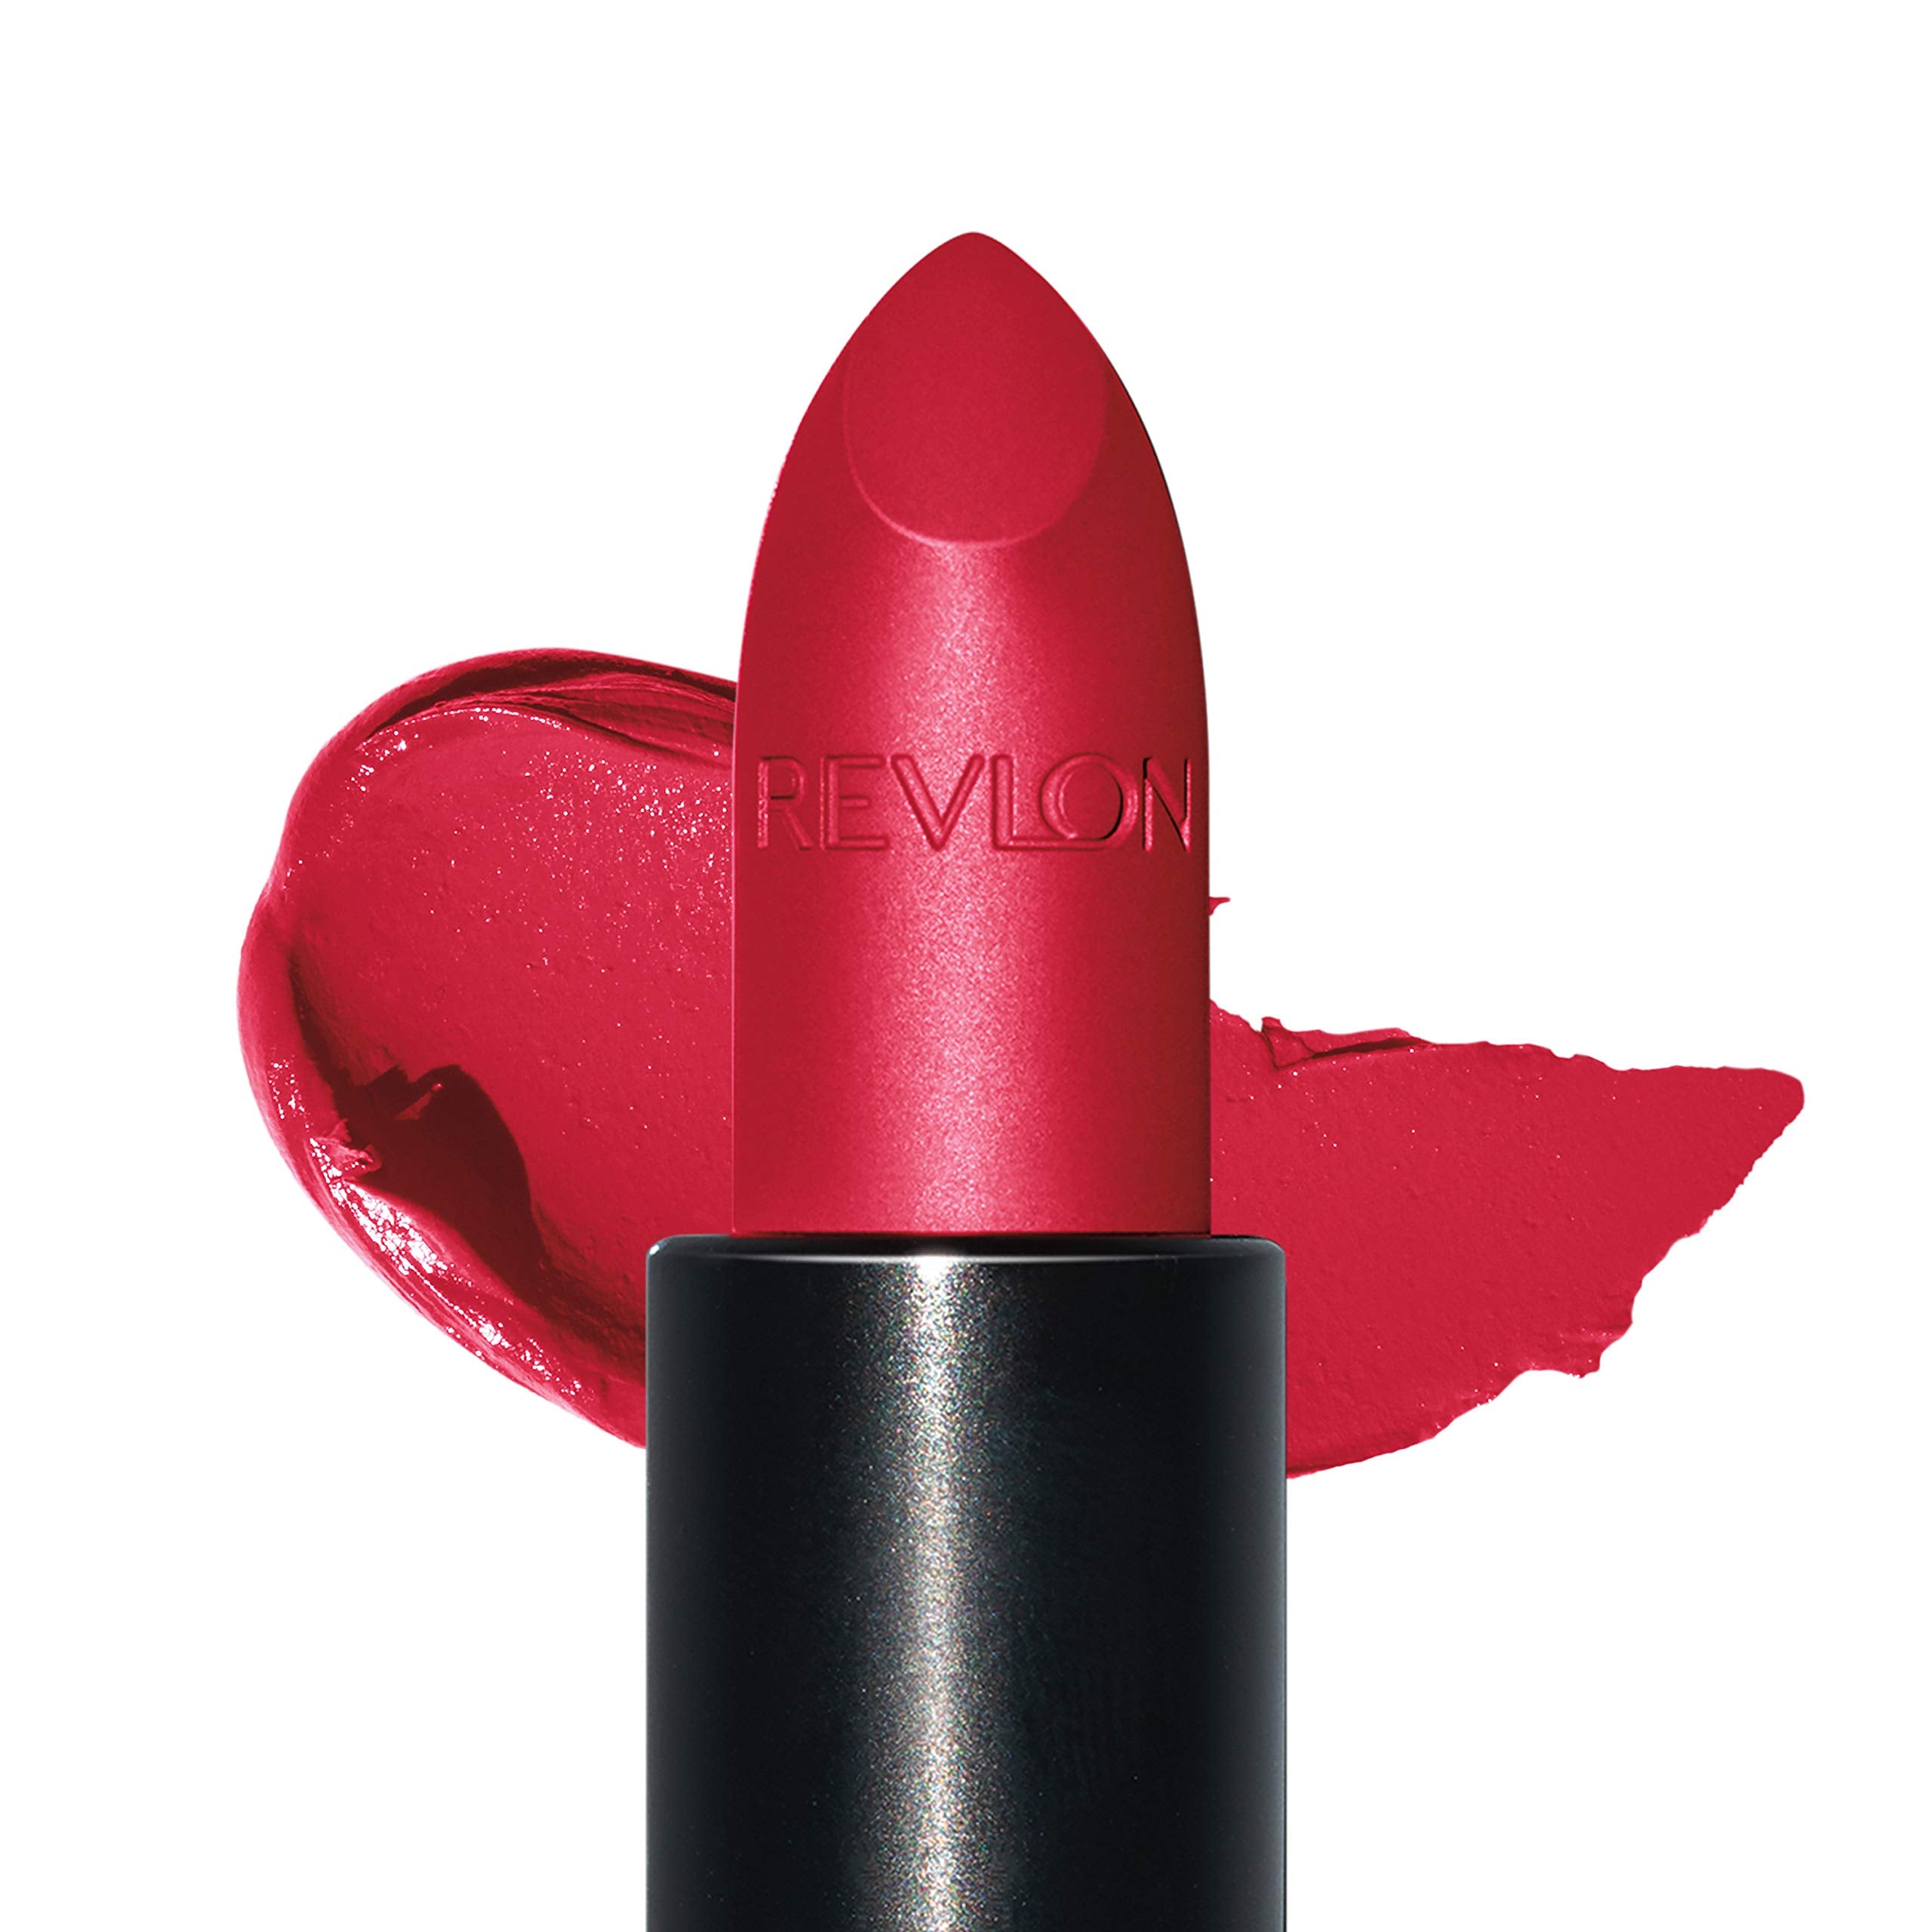 REVLON Super Lustrous The Luscious Mattes Lipstick